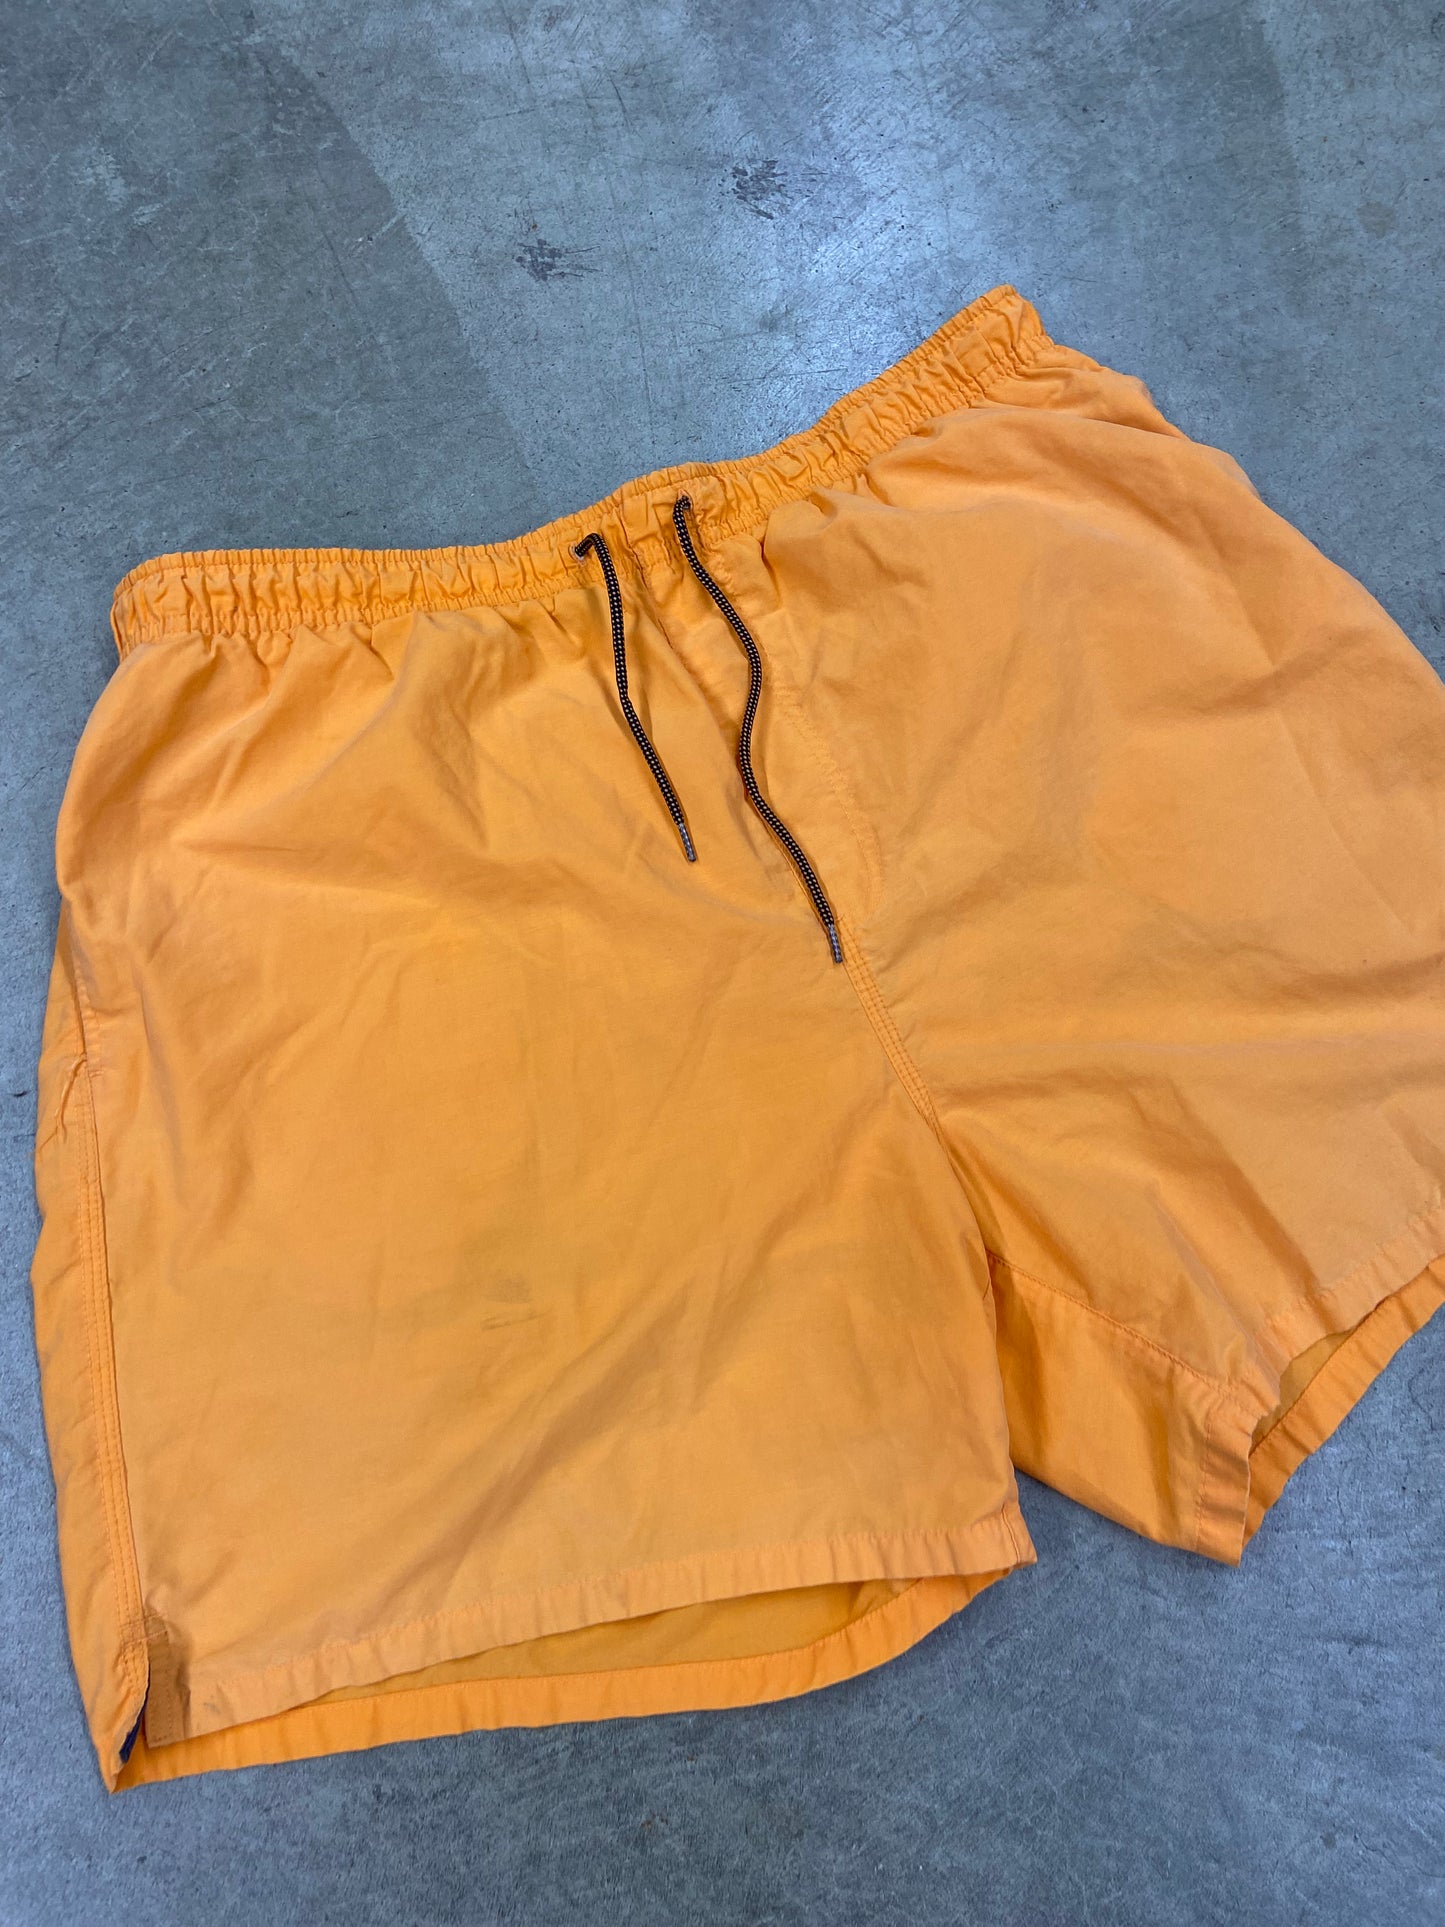 Y2K Orange Nylon Shorts Sz XL